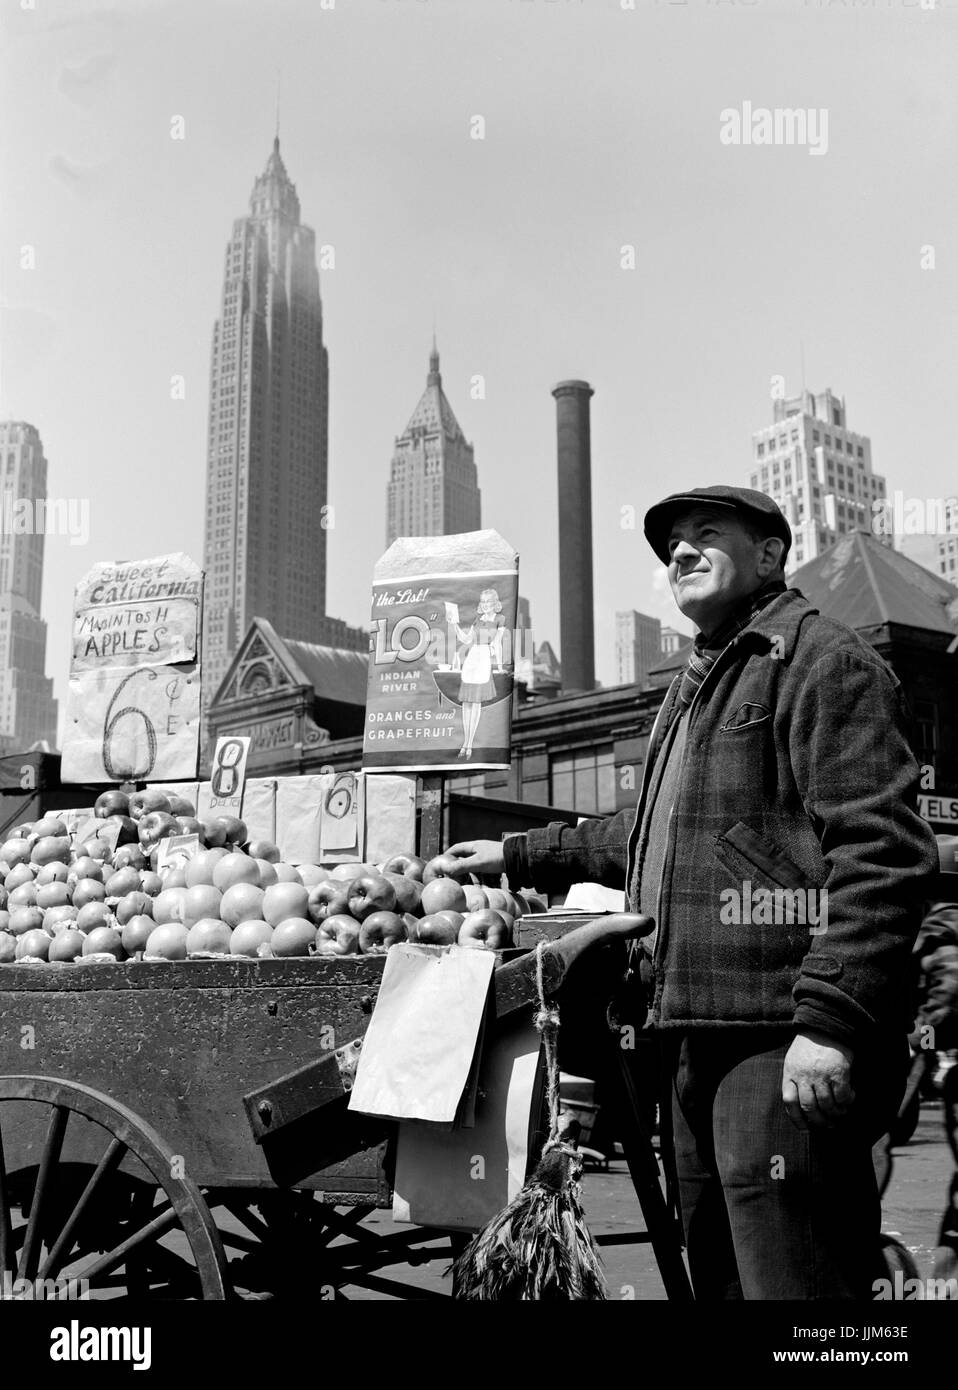 New York, New York. Spingere il carrello fornitore di frutta al Fulton Fish market.Parks, Gordon, 1912- fotografo.CREATO/pubblicato1943 può. Foto Stock